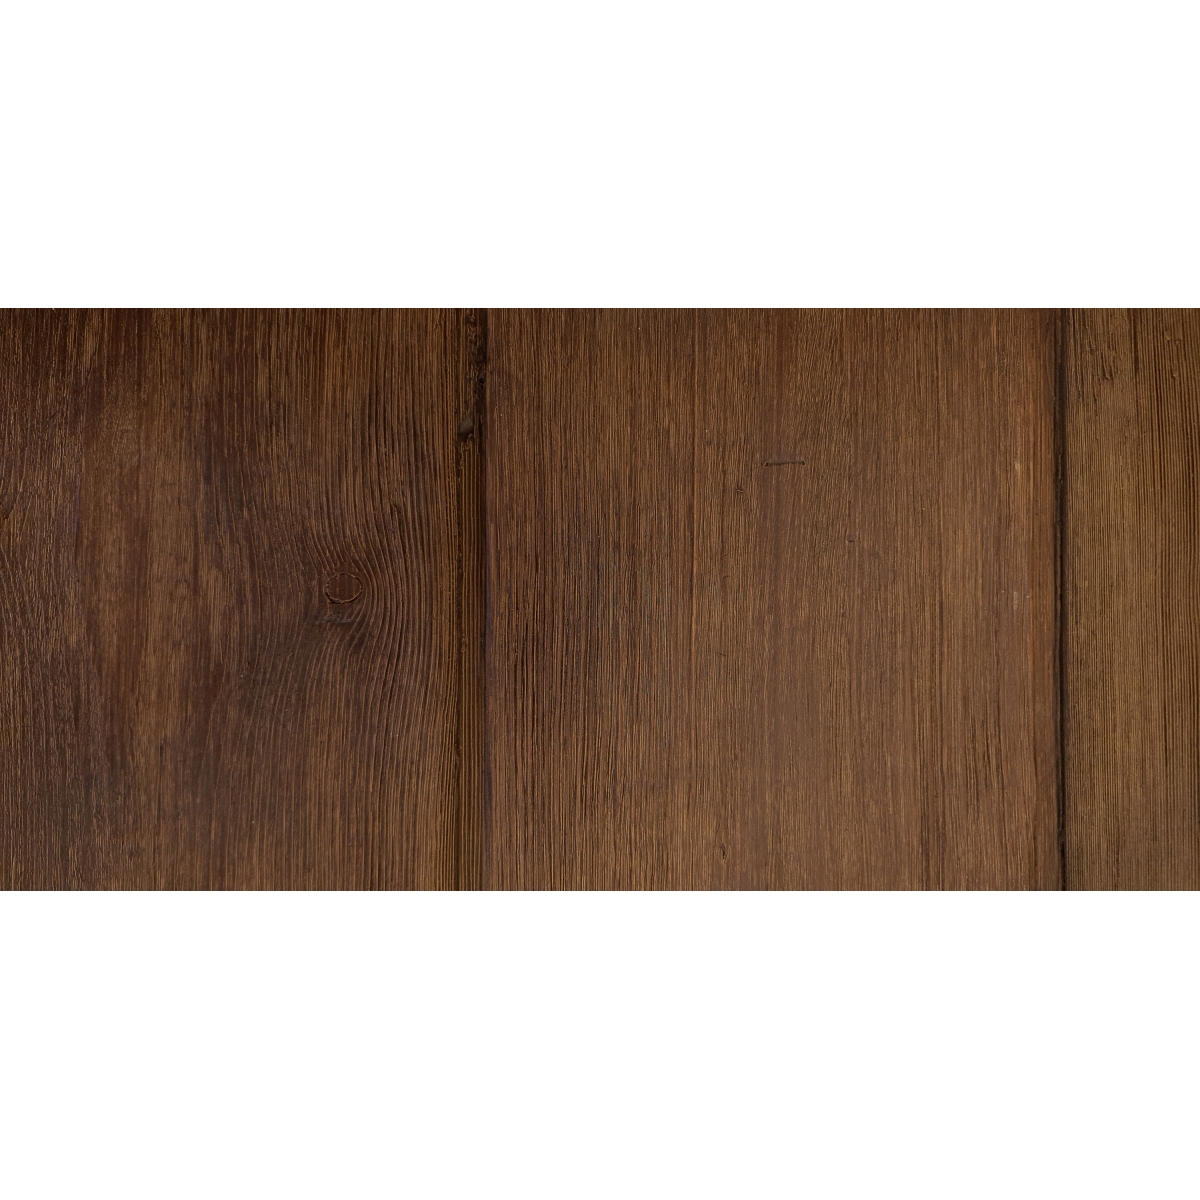 Imagem de painel rústico de 300x62cm com três ripas de imitação de madeira